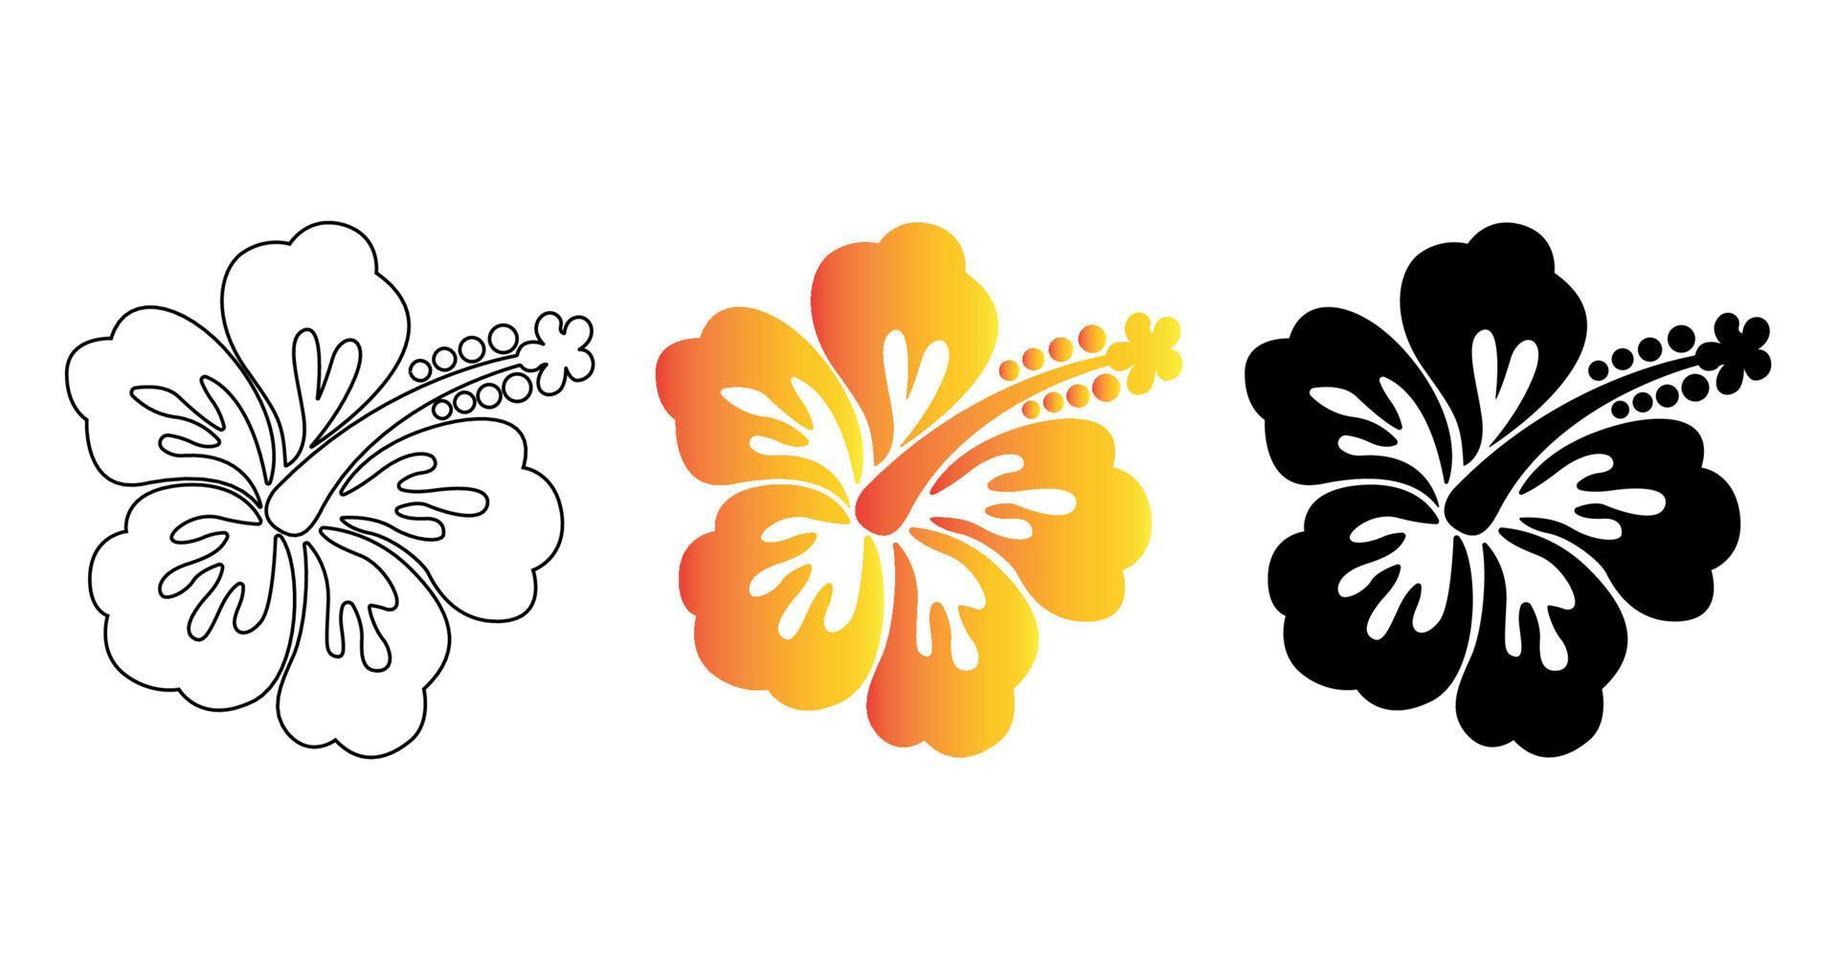 conjunto de ilustración de flor de hibisco hawaiano. vector